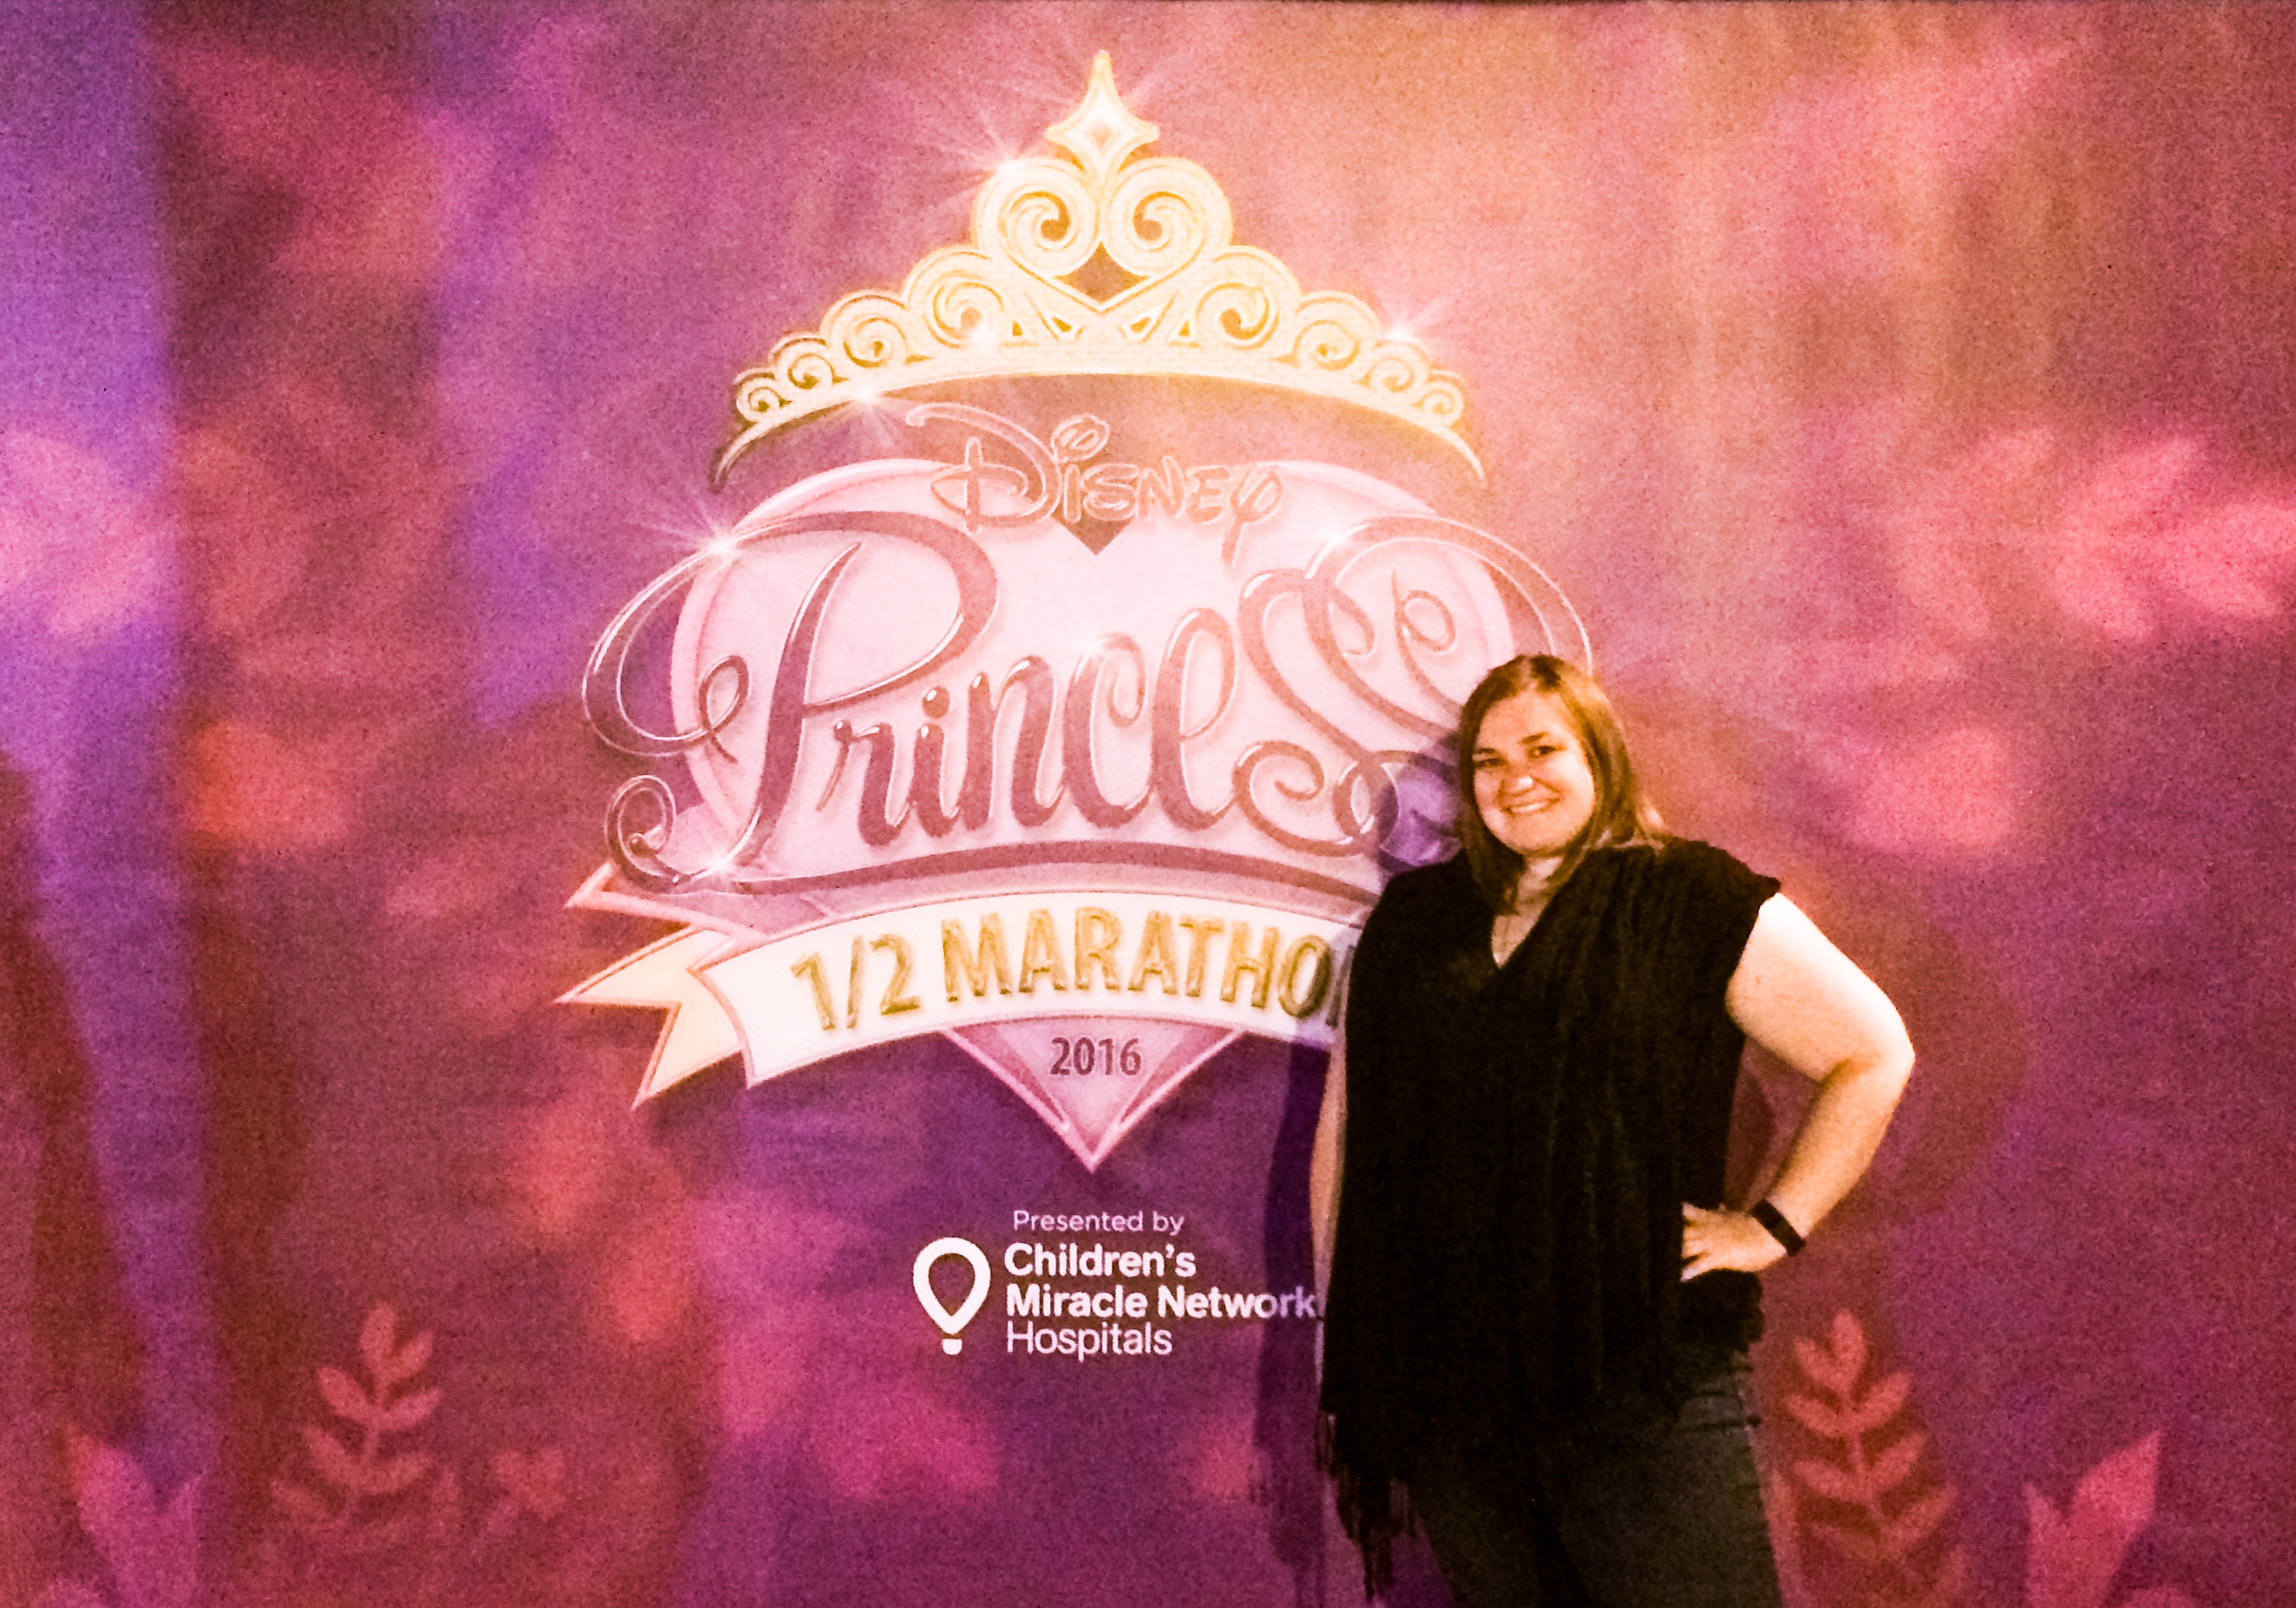 Disney Princess 5K | EpicureanTravelerBlog.com